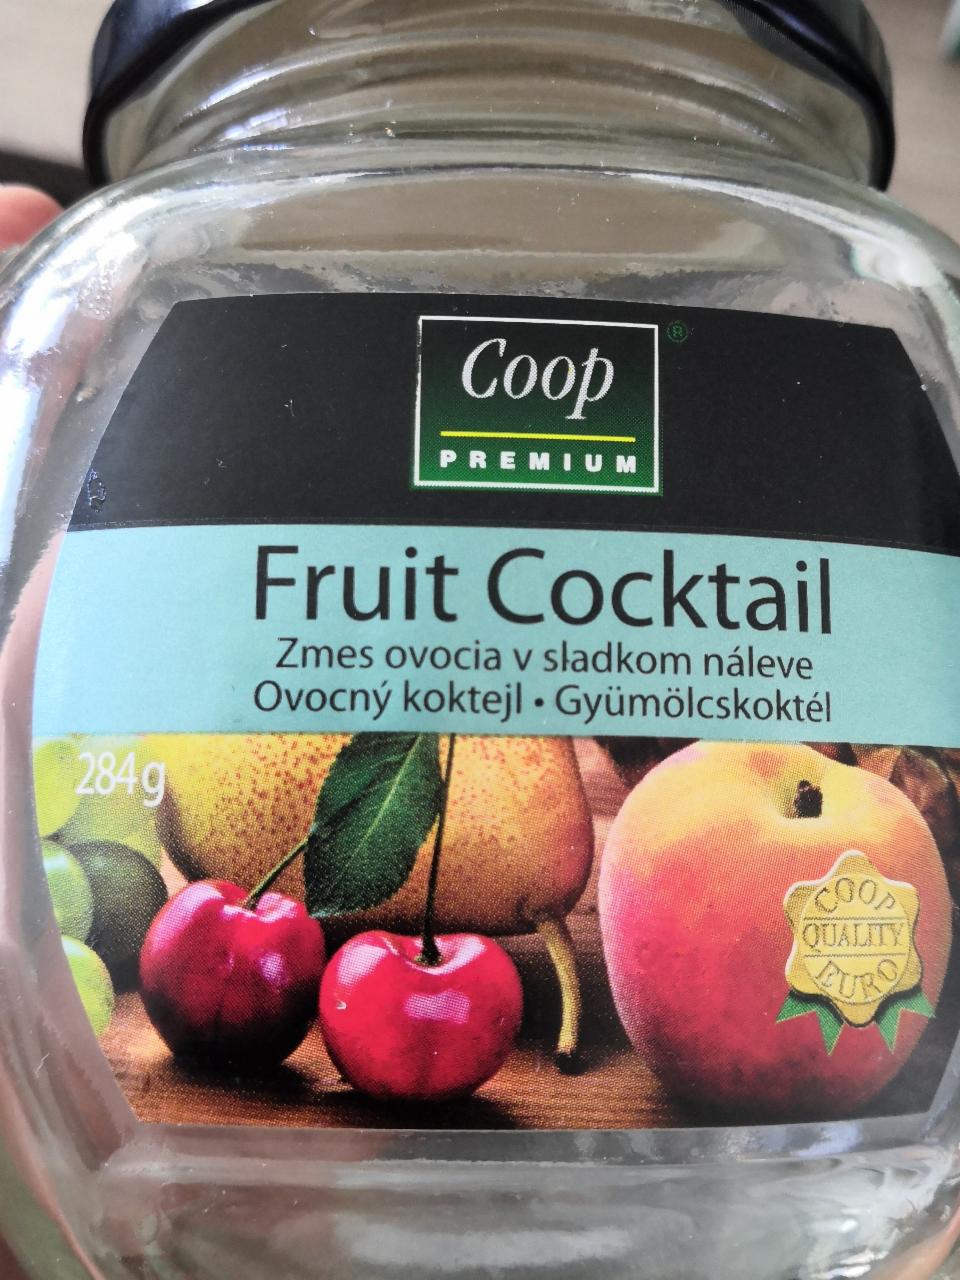 Fotografie - Fruit Coctail Coop Premium